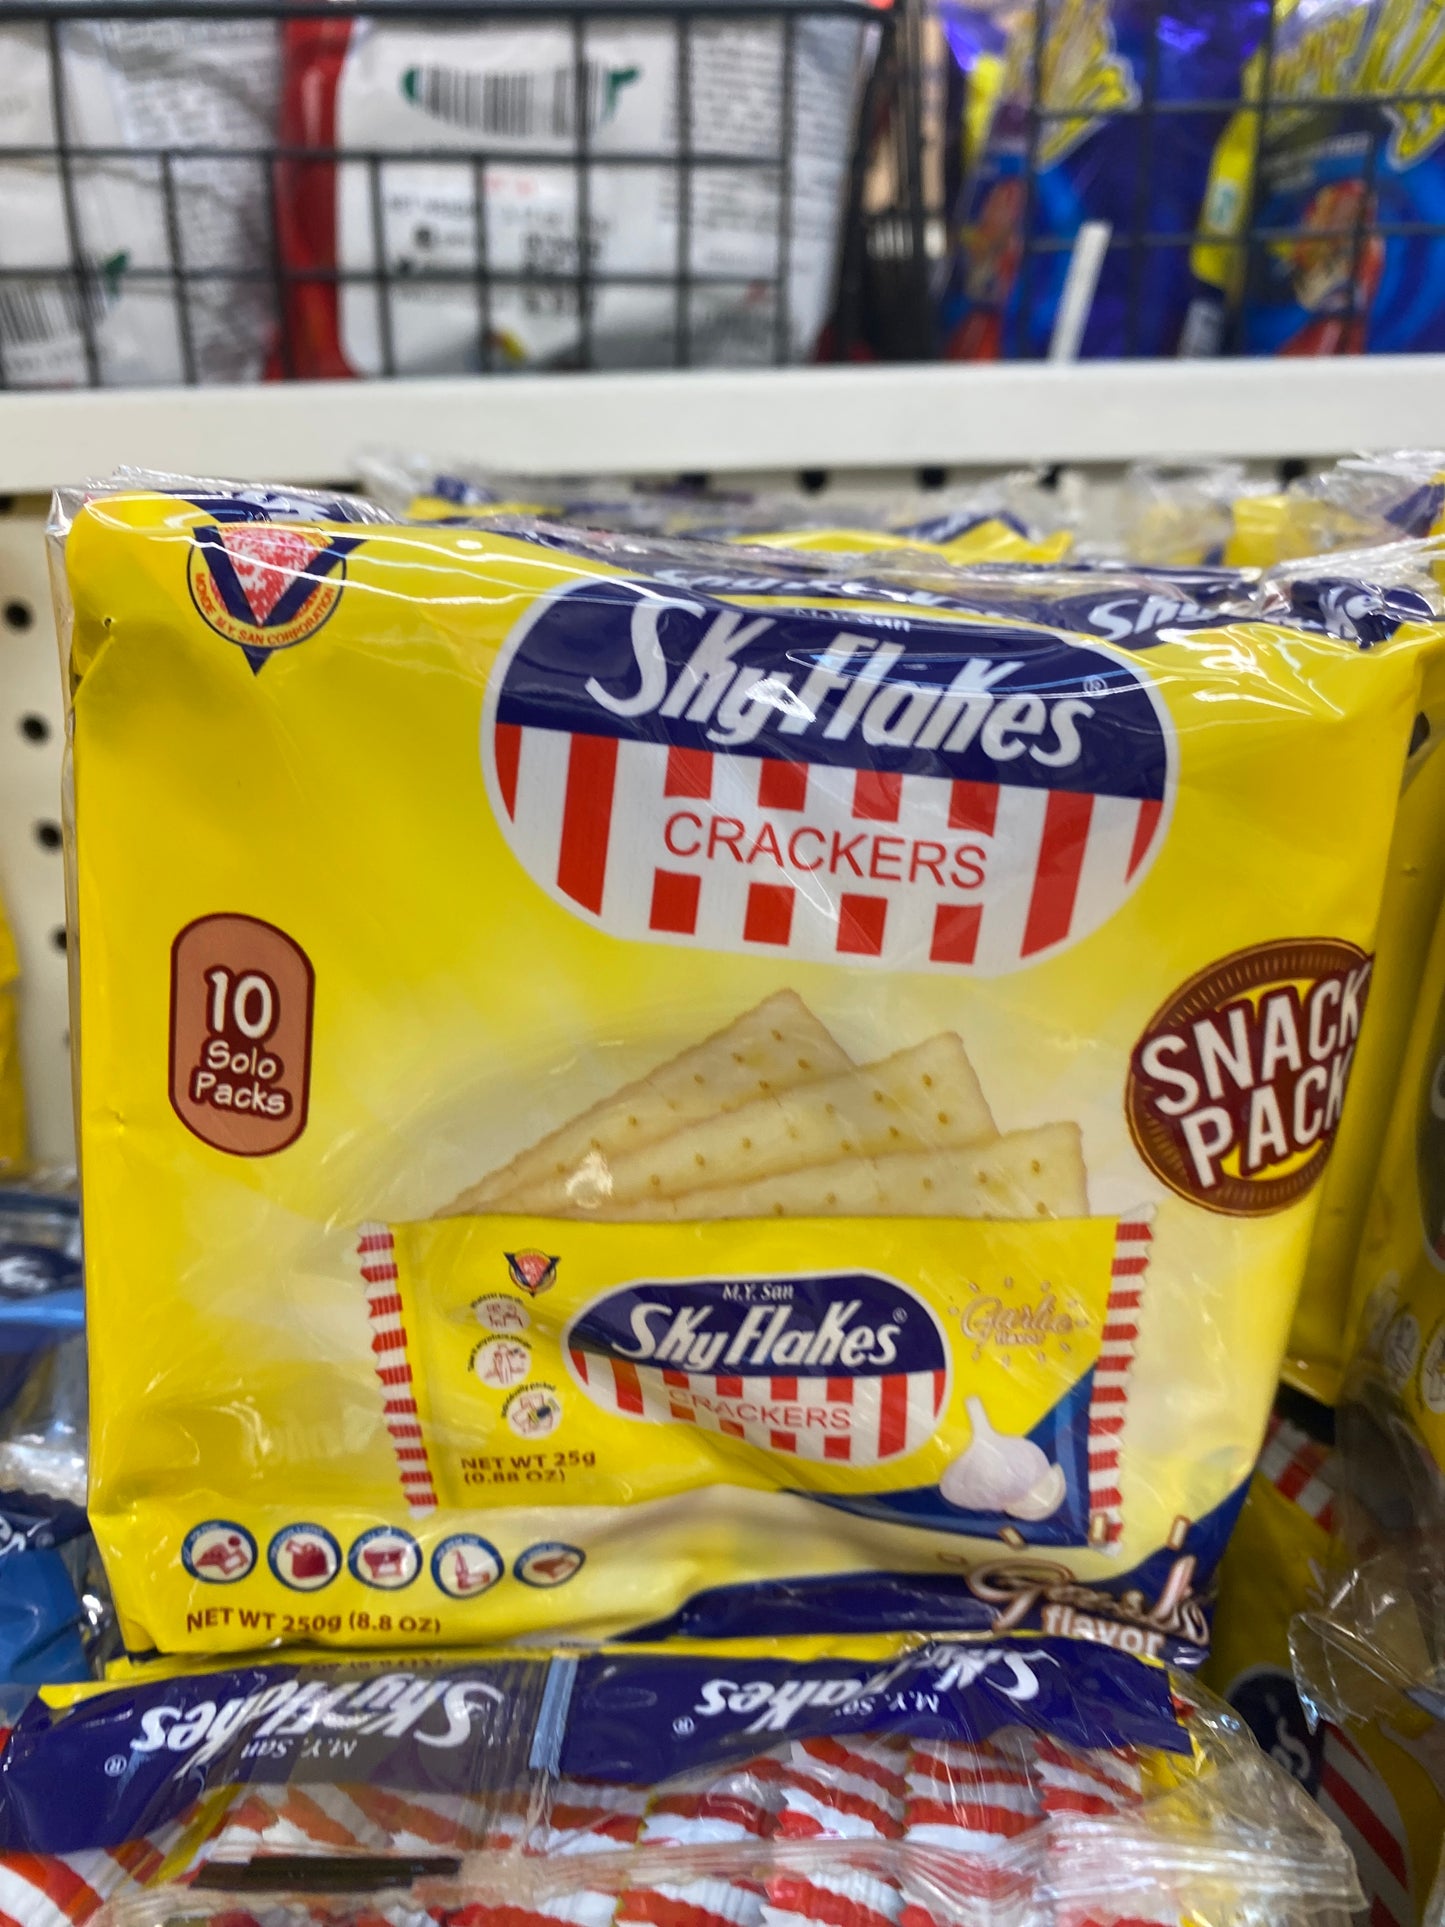 MY San Skyflakes Crackers Garlic Flavor Snack Pack 10packs - 8.8oz